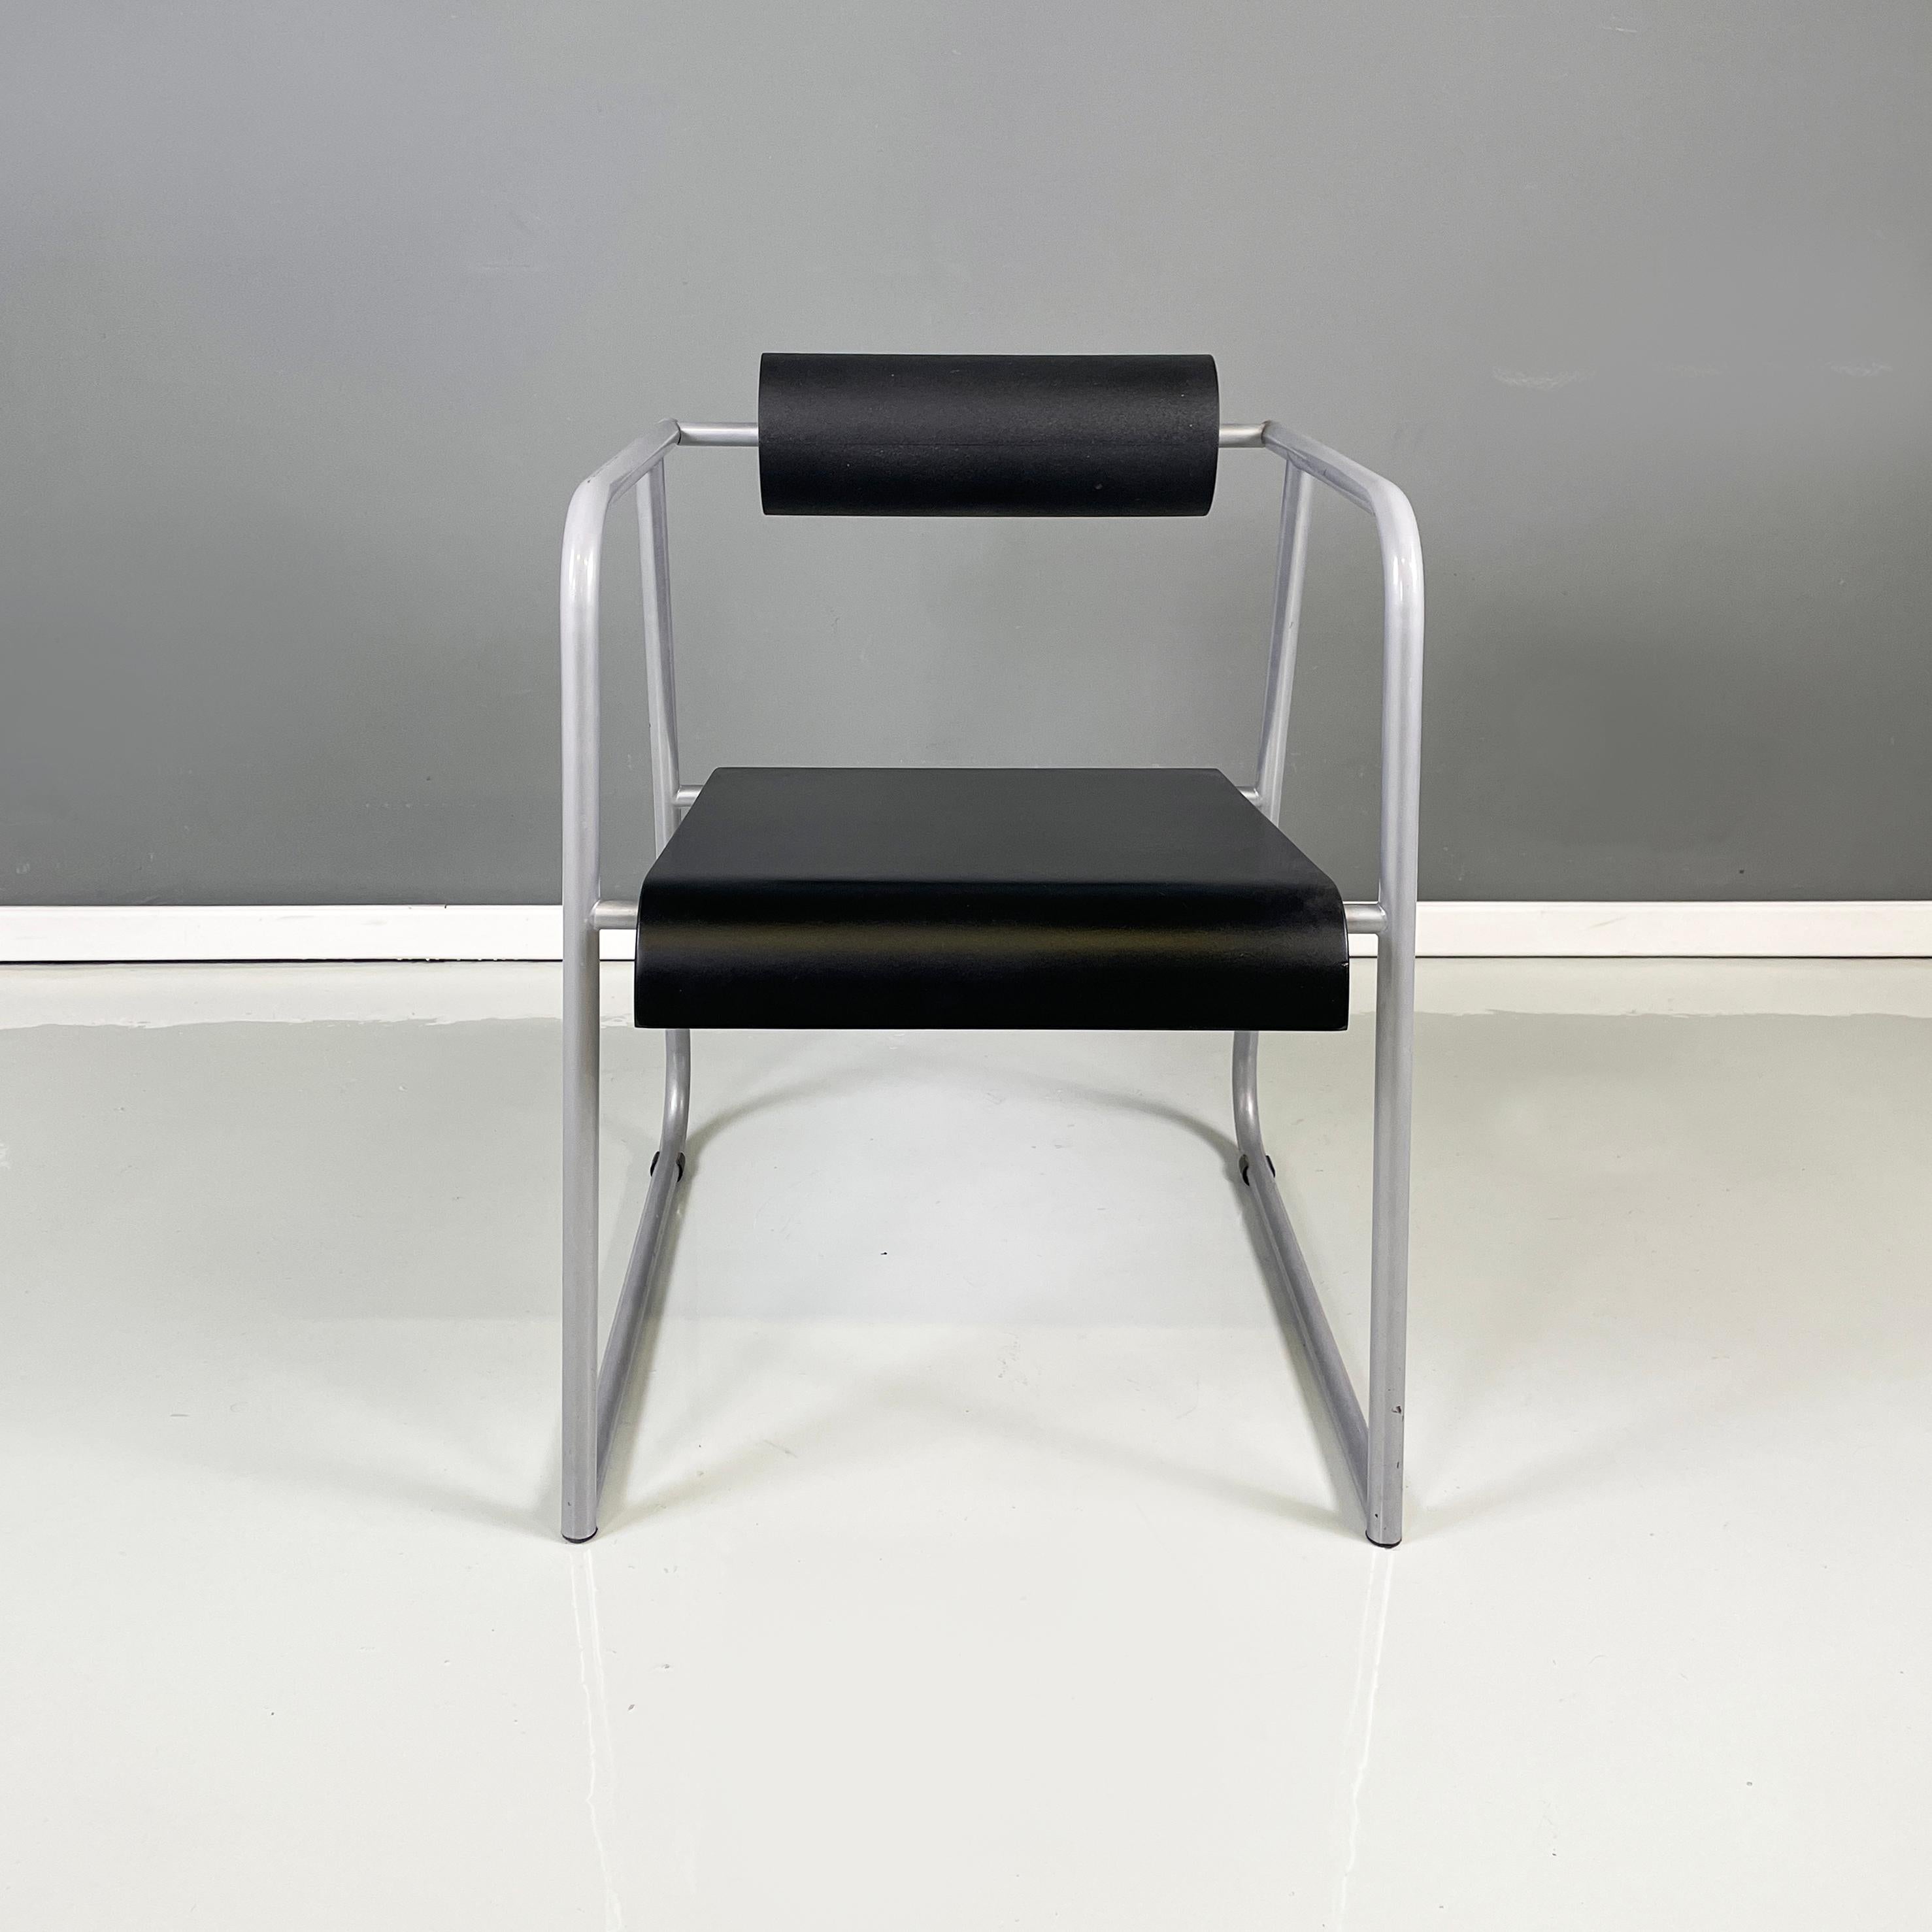 Chaise moderne italienne en métal gris, caoutchouc noir et bois, années 1980
Chaise avec structure en métal tubulaire peinte en gris. L'assise rectangulaire est en bois courbé noir et le dossier cylindrique est en caoutchouc noir.
1980s. 
Bon état,